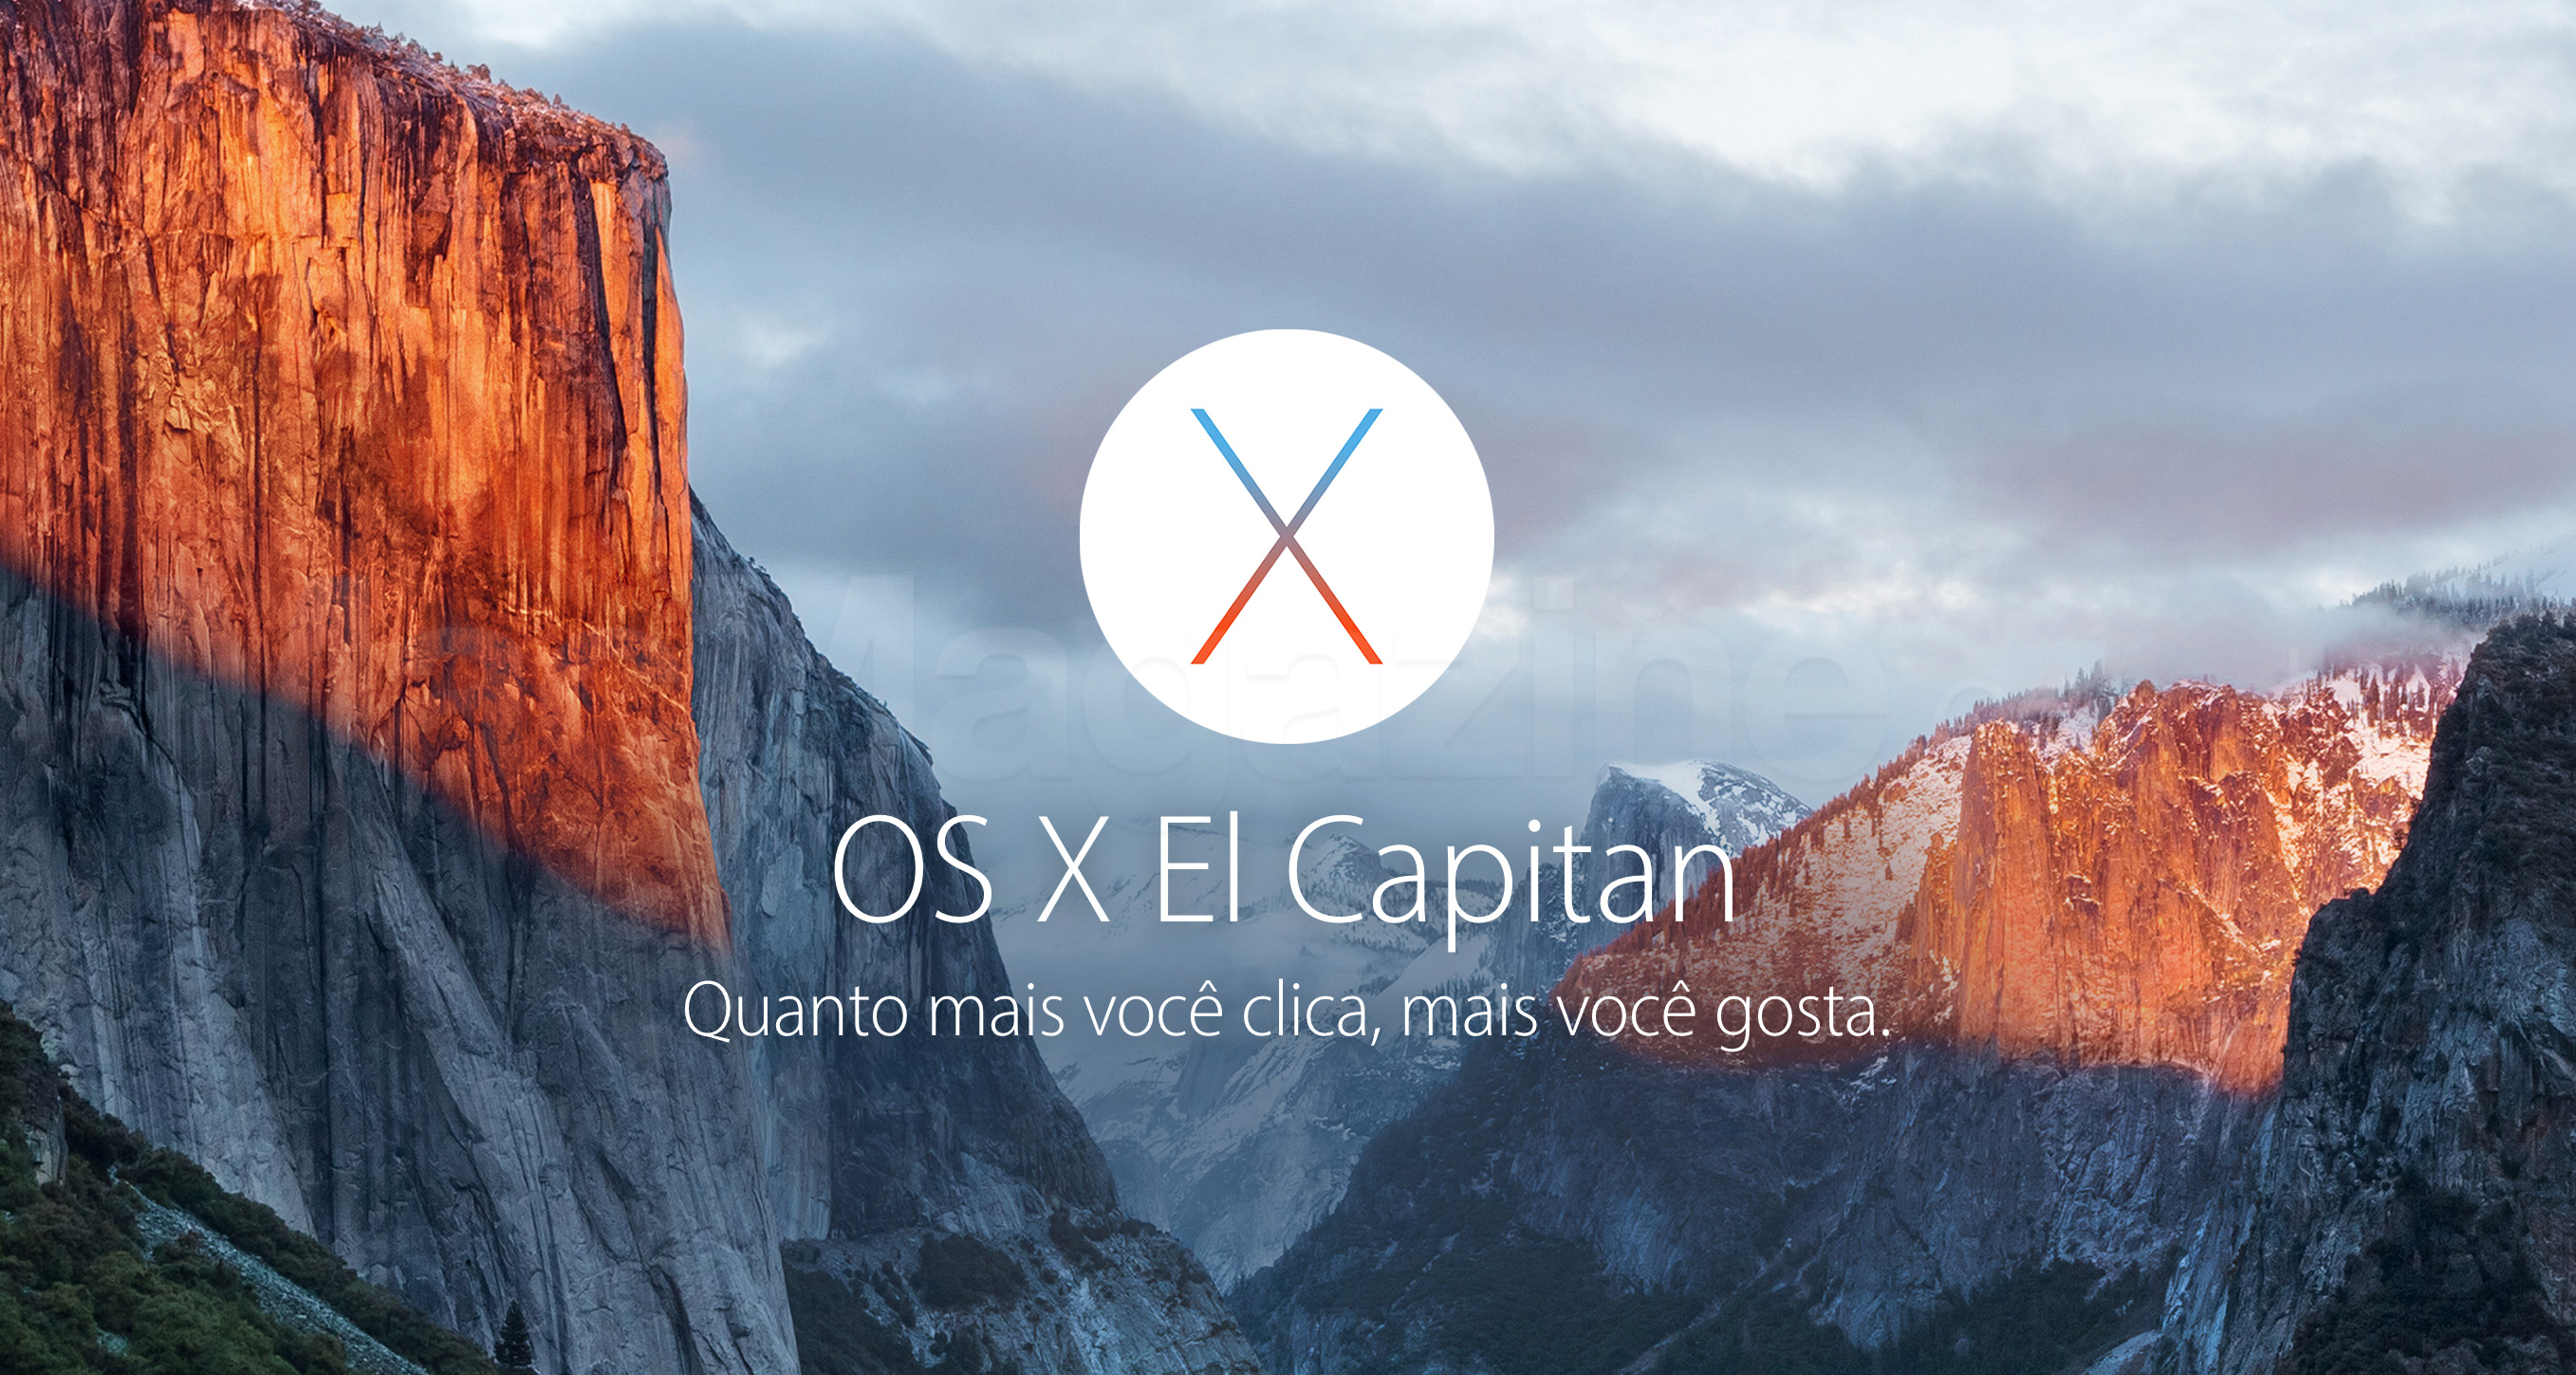 Capa do OS X El Capitan no site da Apple